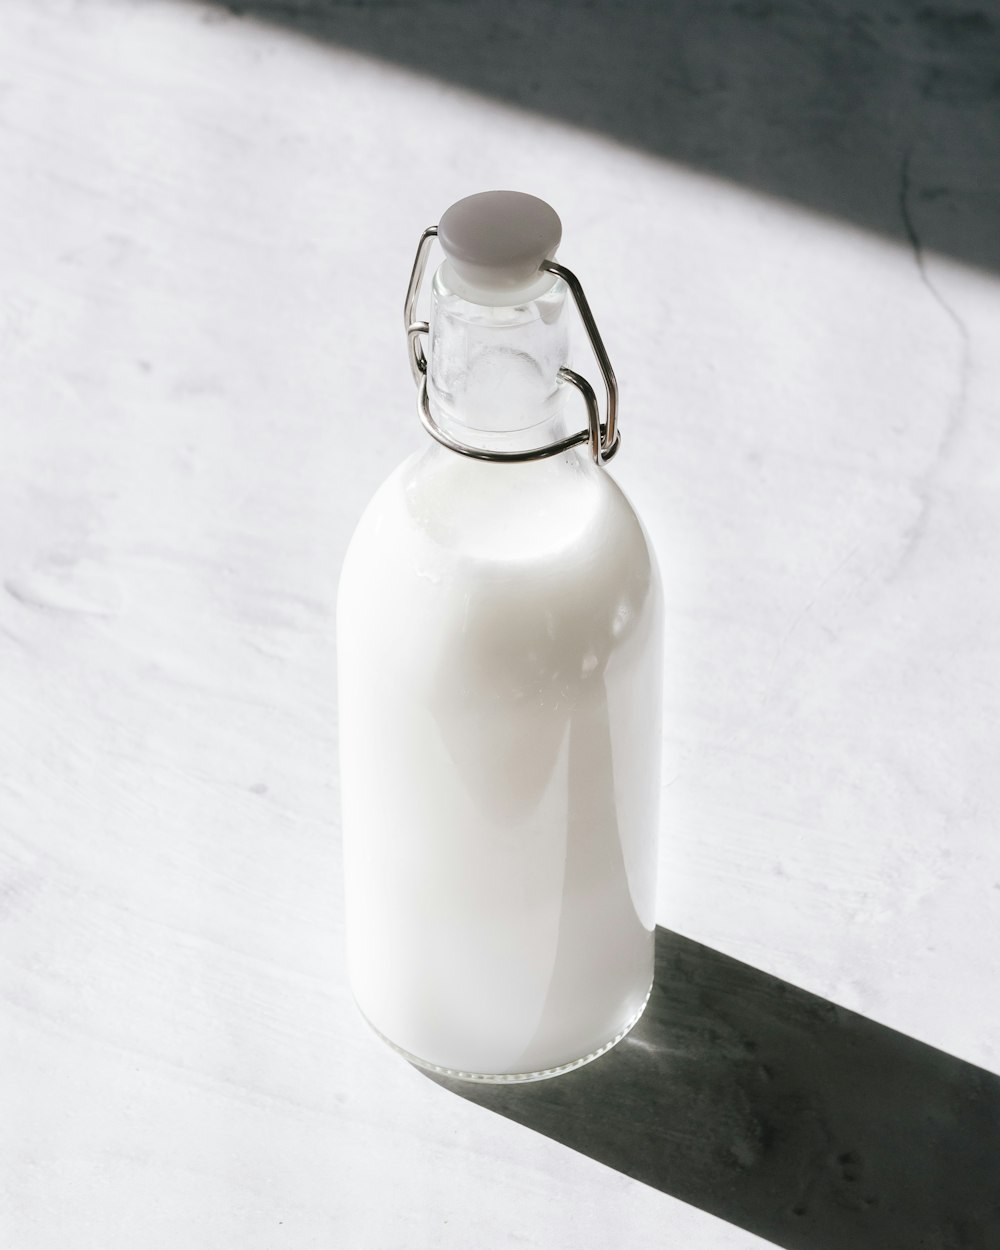 Klarglasflasche gefüllt mit weißer Flüssigkeit